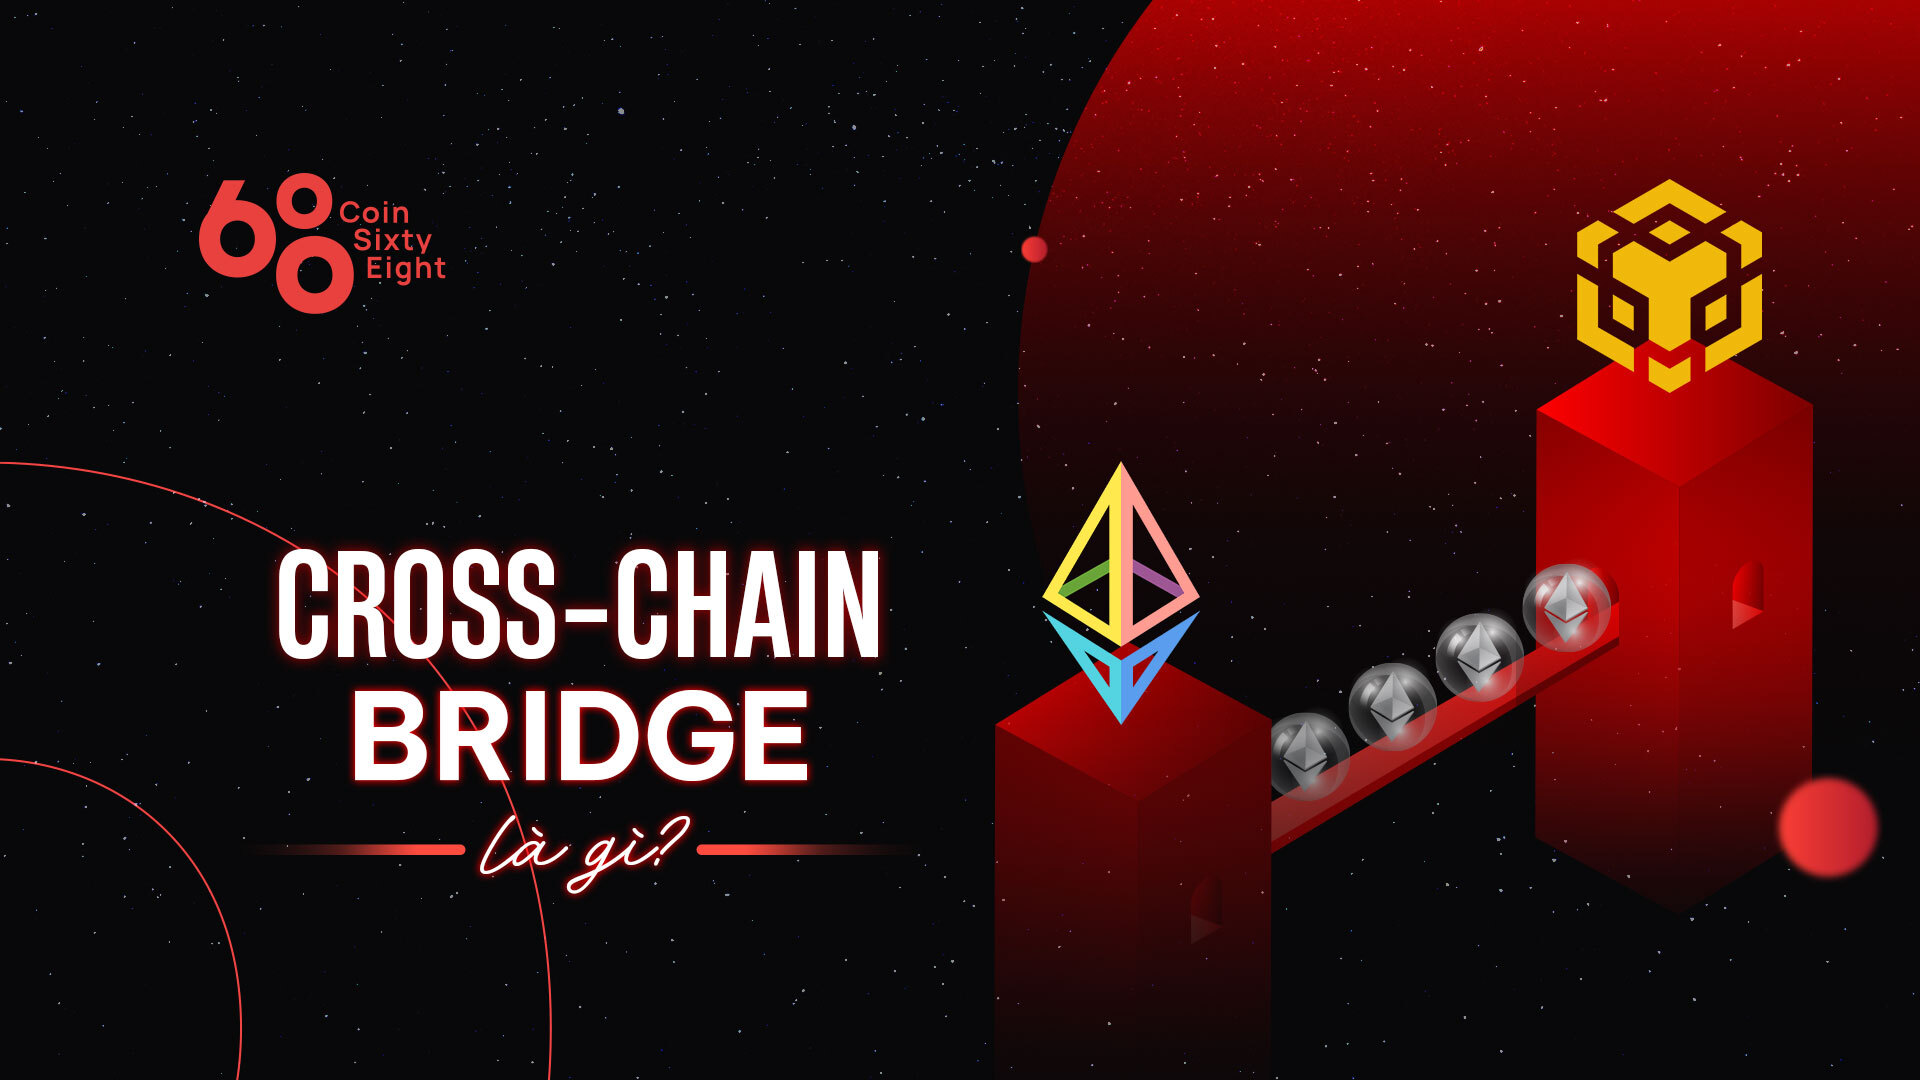 Cross-chain Bridge Là Gì Làm Sao Kể Các Blockchain Kết Nối Với Nhau